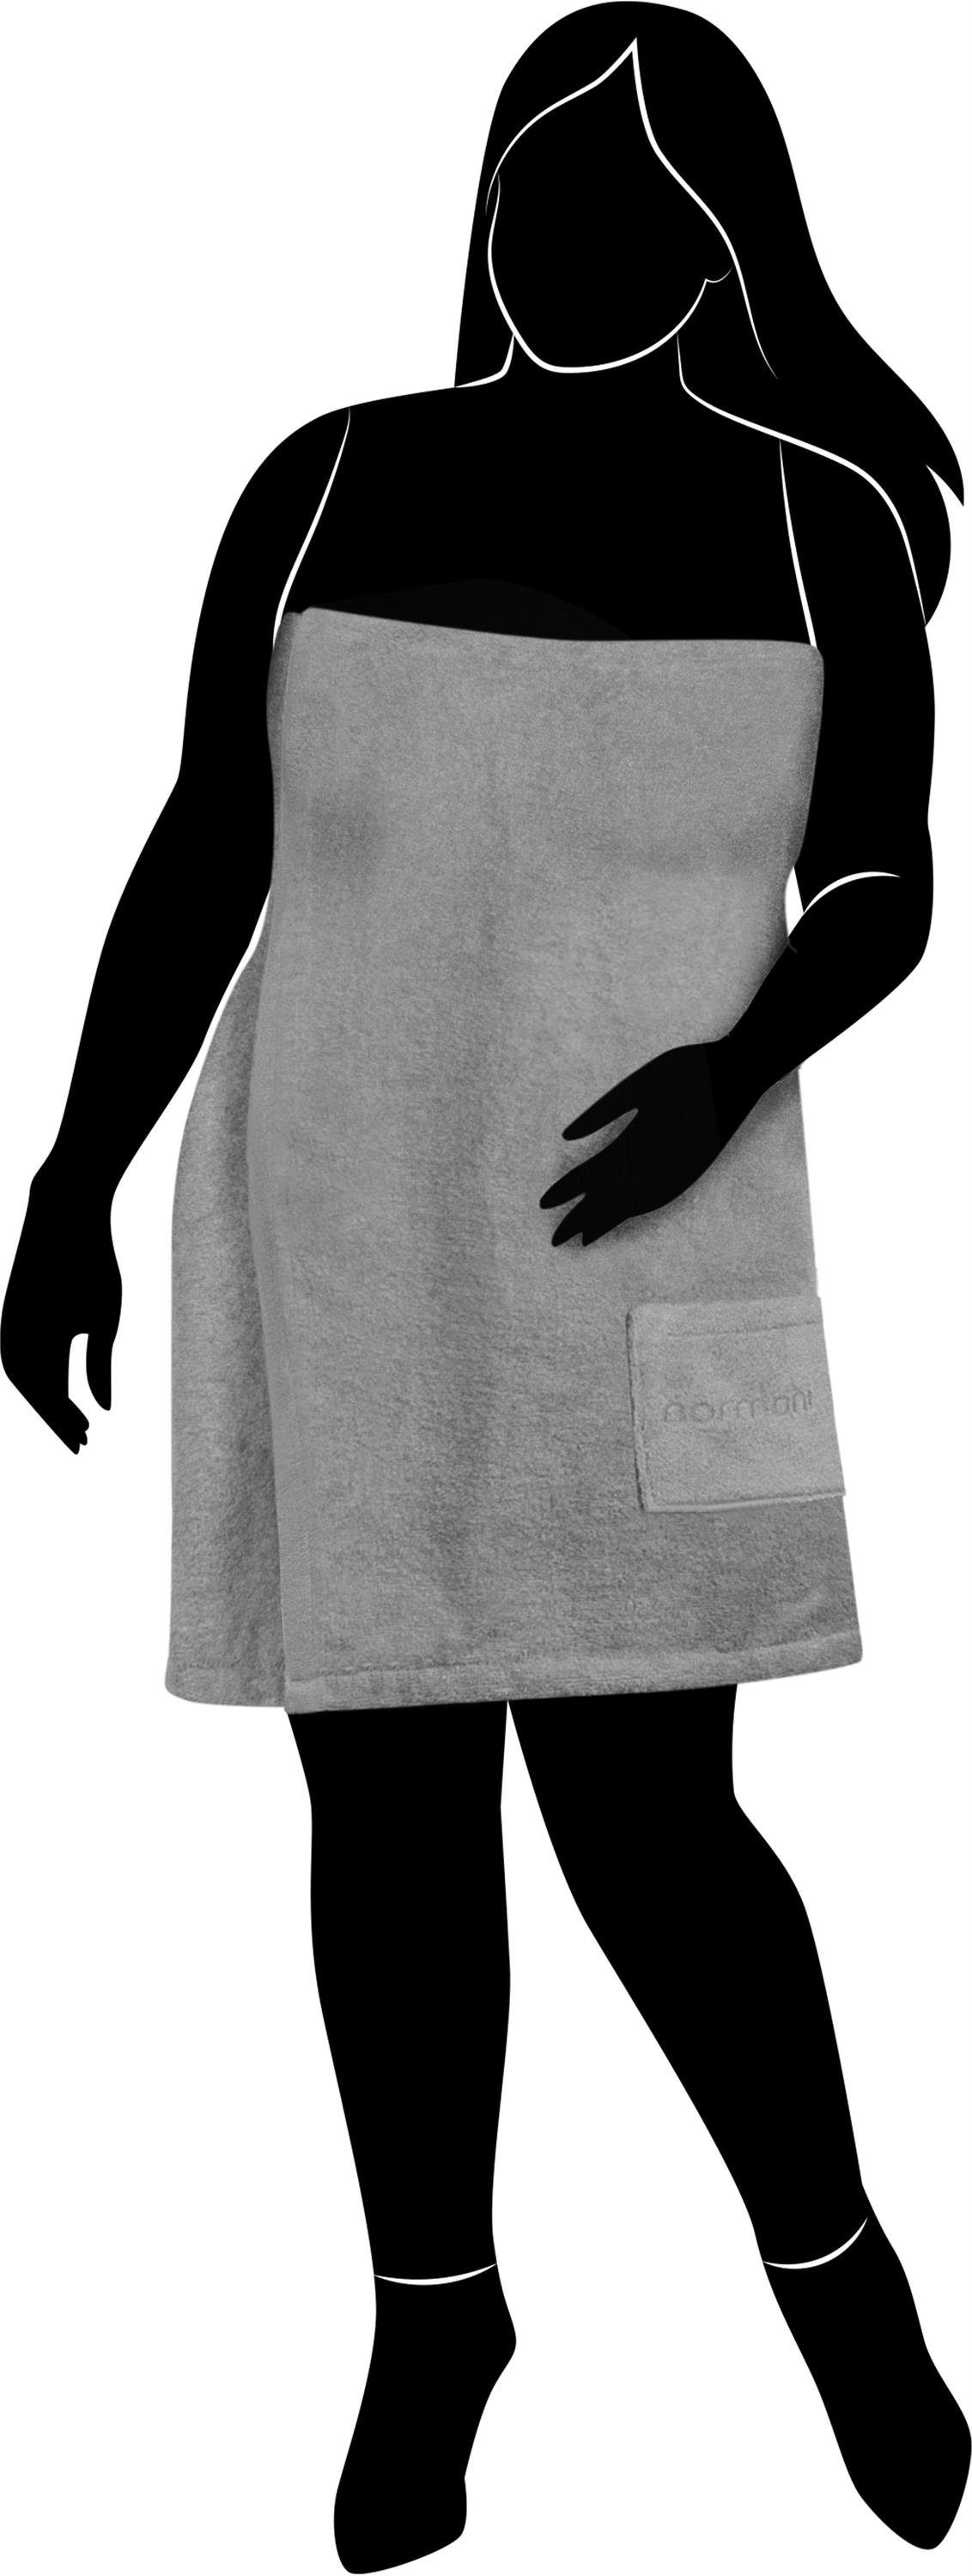 extra XL-4XL) für (Größe Saunahandtuch Saunakilt normani groß, Damen extra breit Saunatuch Grau